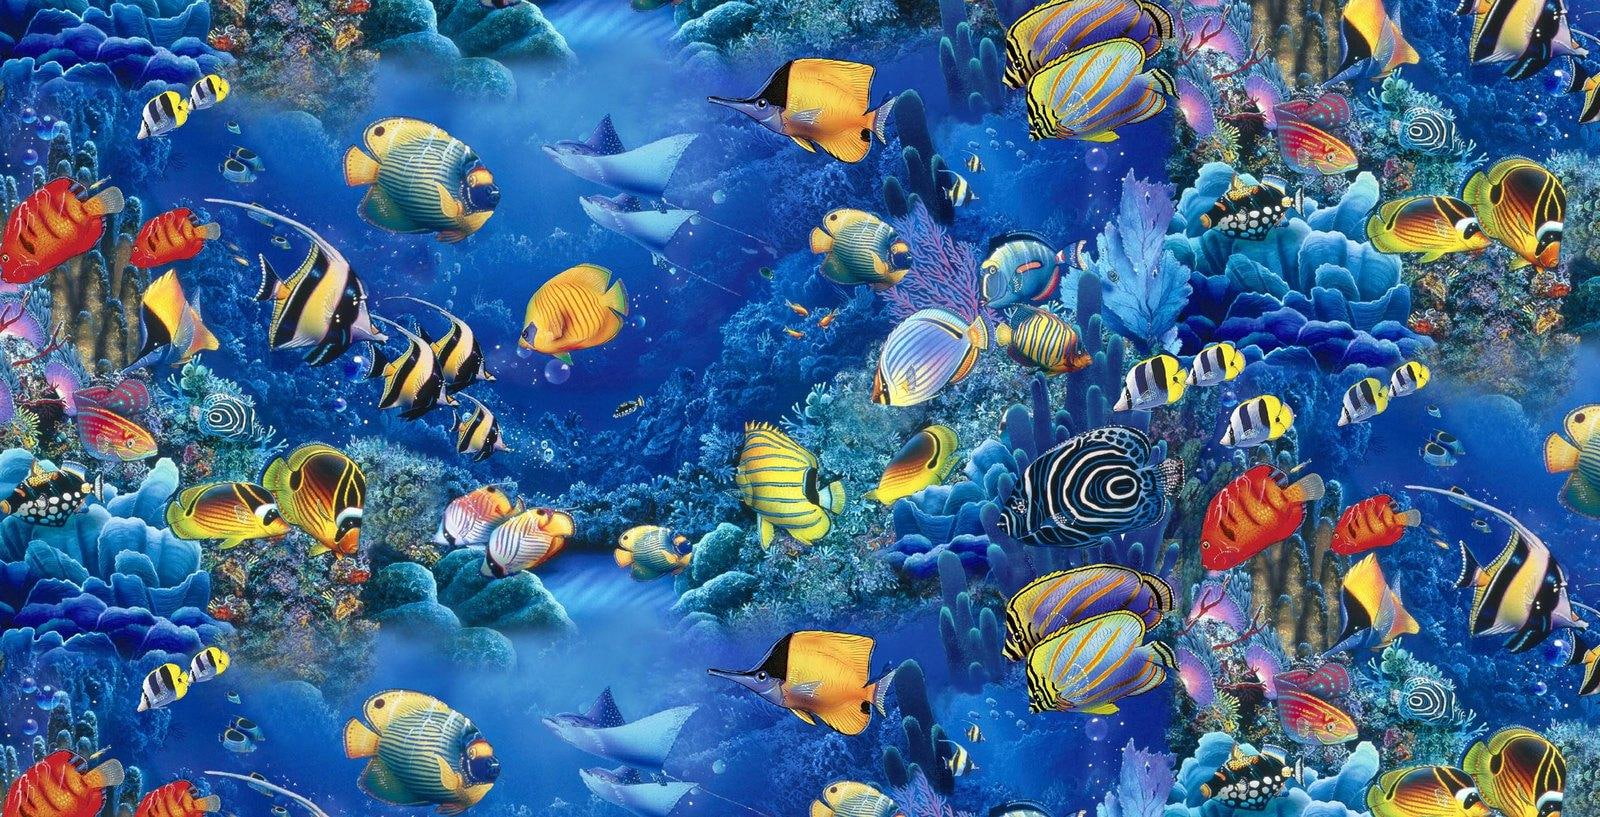 Aquarium Fishes, paintings, underwater